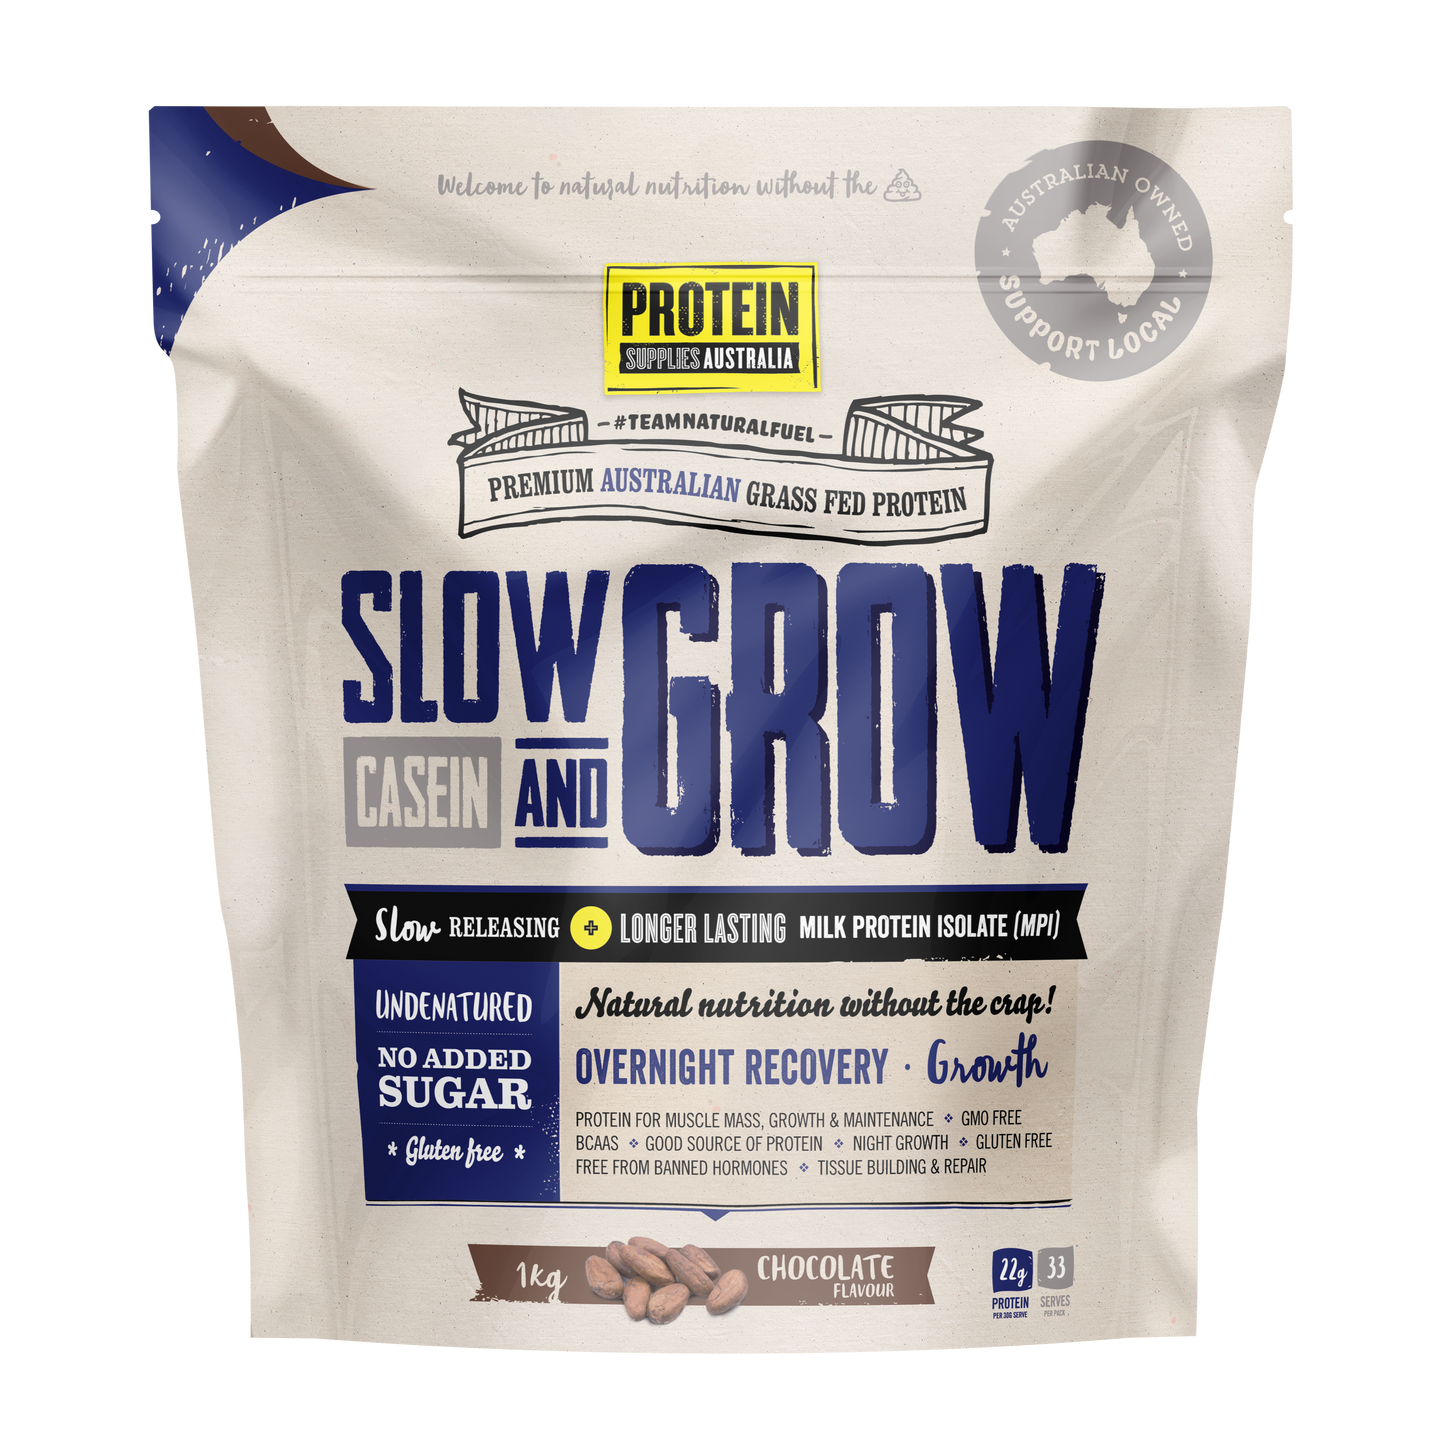 Protein Supplies Australia Slow & Grow Casein (Slow Release) 1kg, Chocolate Flavour